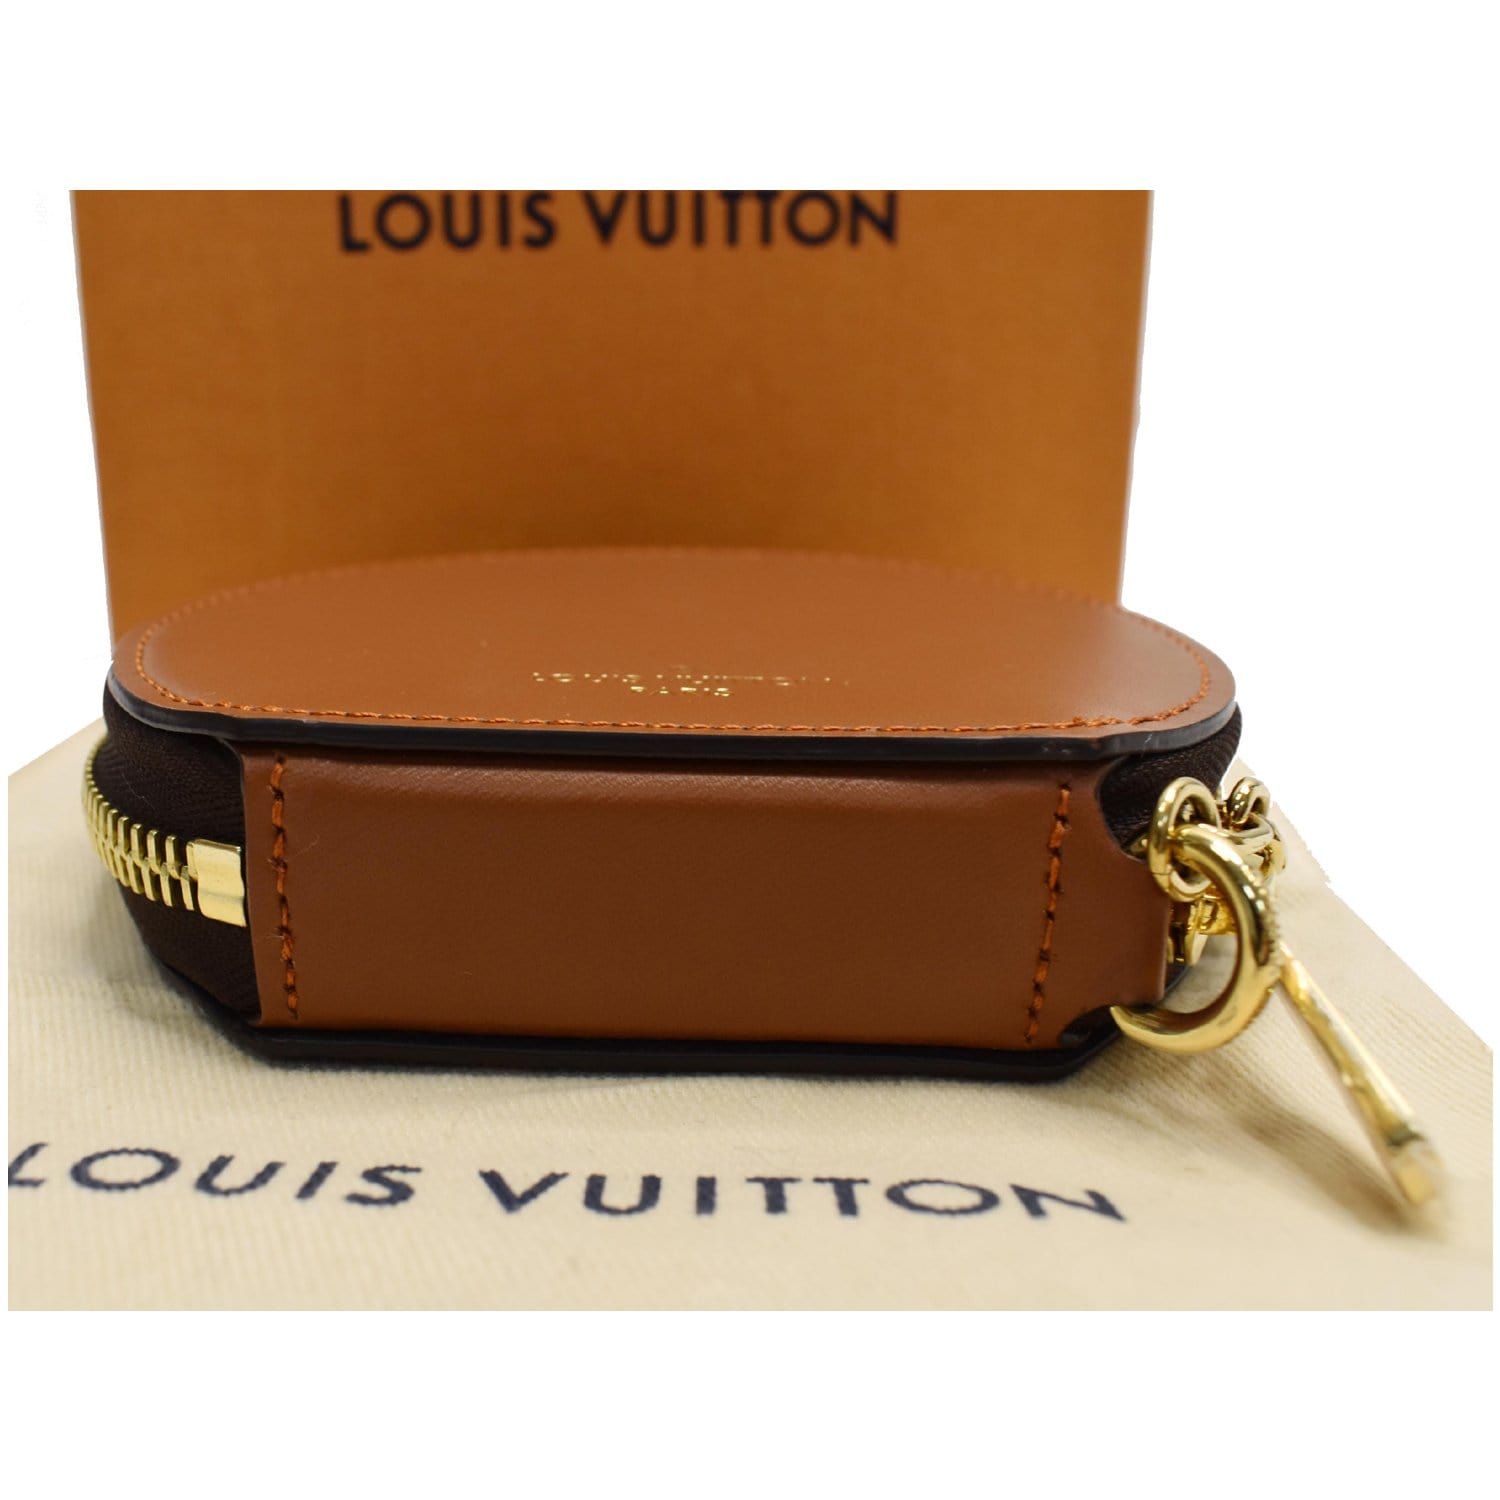 Box Louis Vuitton 375409